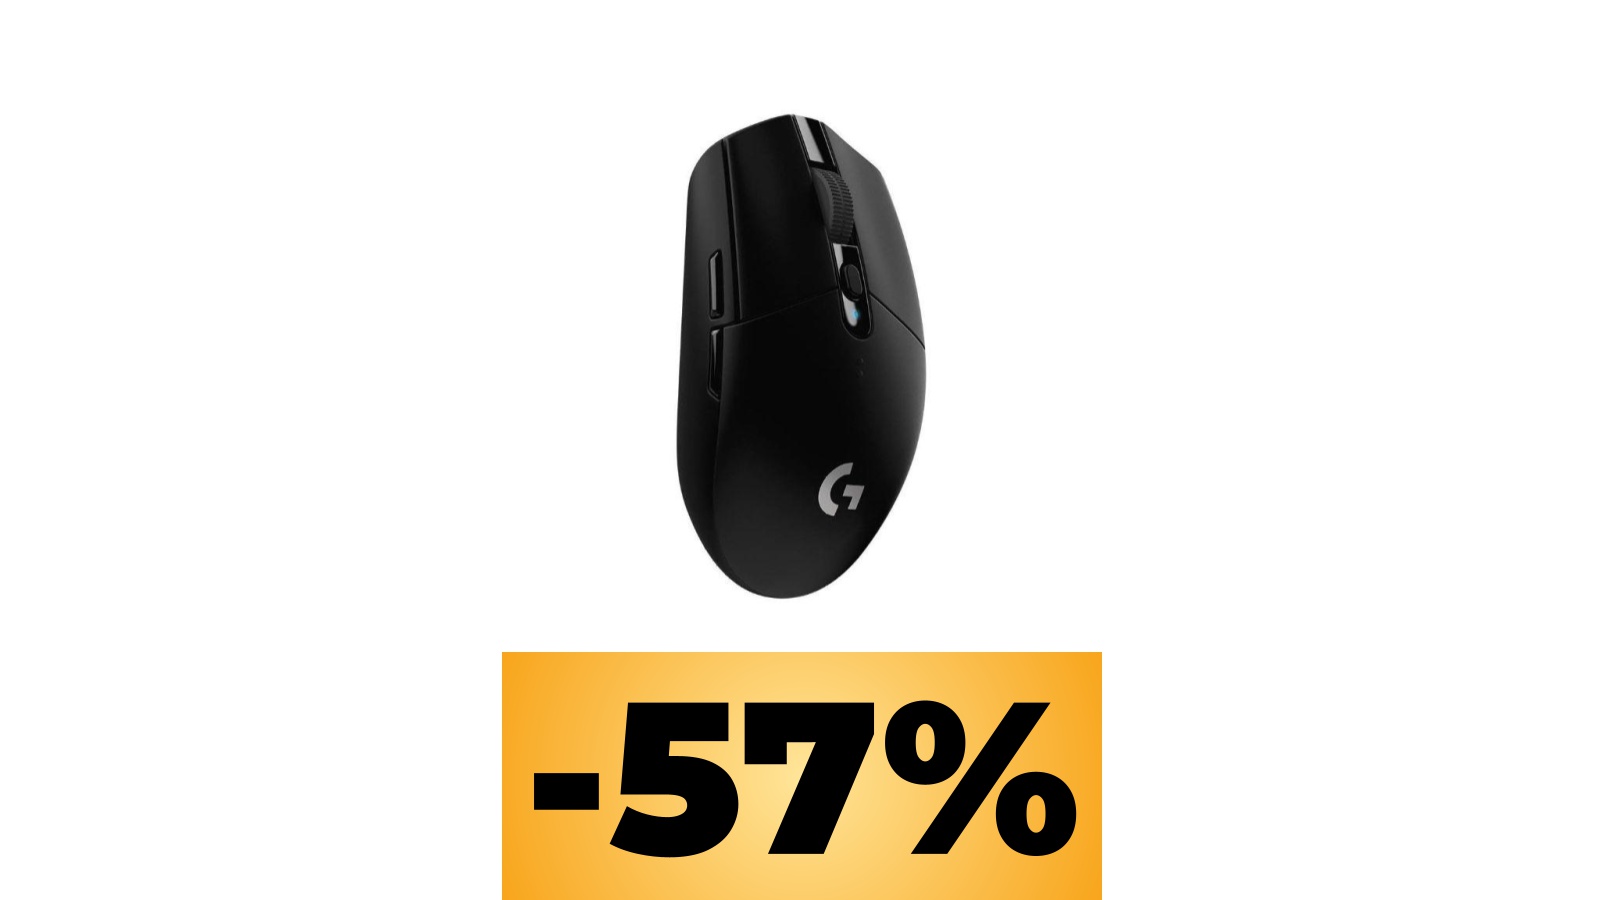 Il mouse Logitech G305 LIGHTSPEED è in sconto su Amazon Italia: vediamo il prezzo